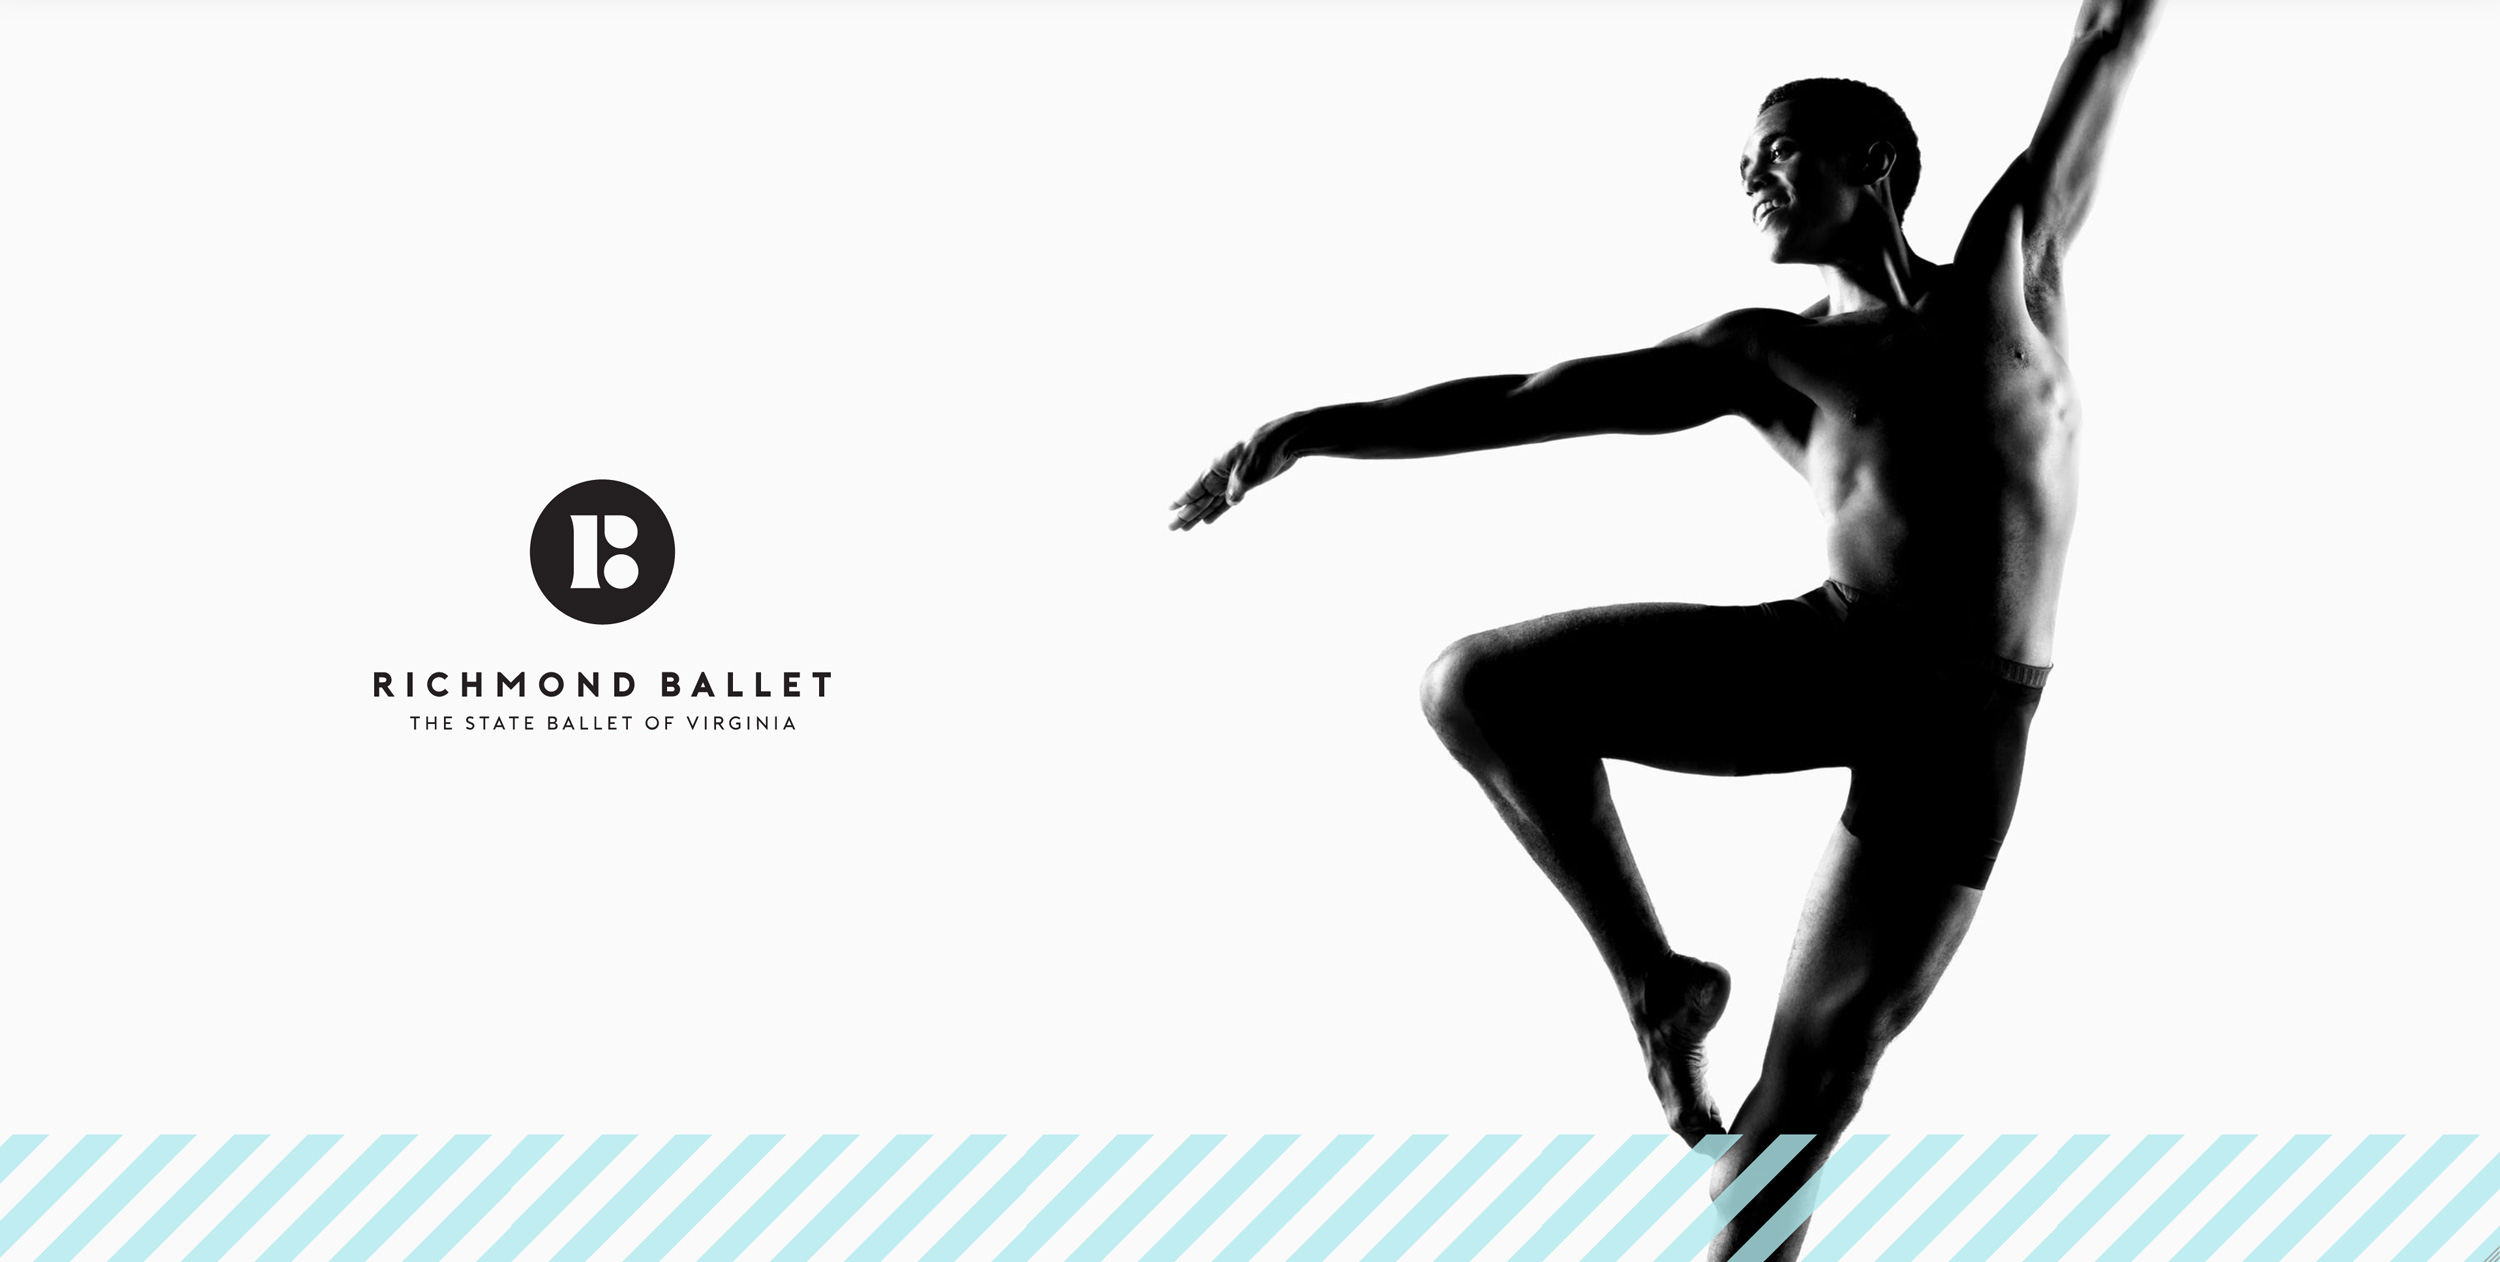 Silhouette of Ballet Dancer